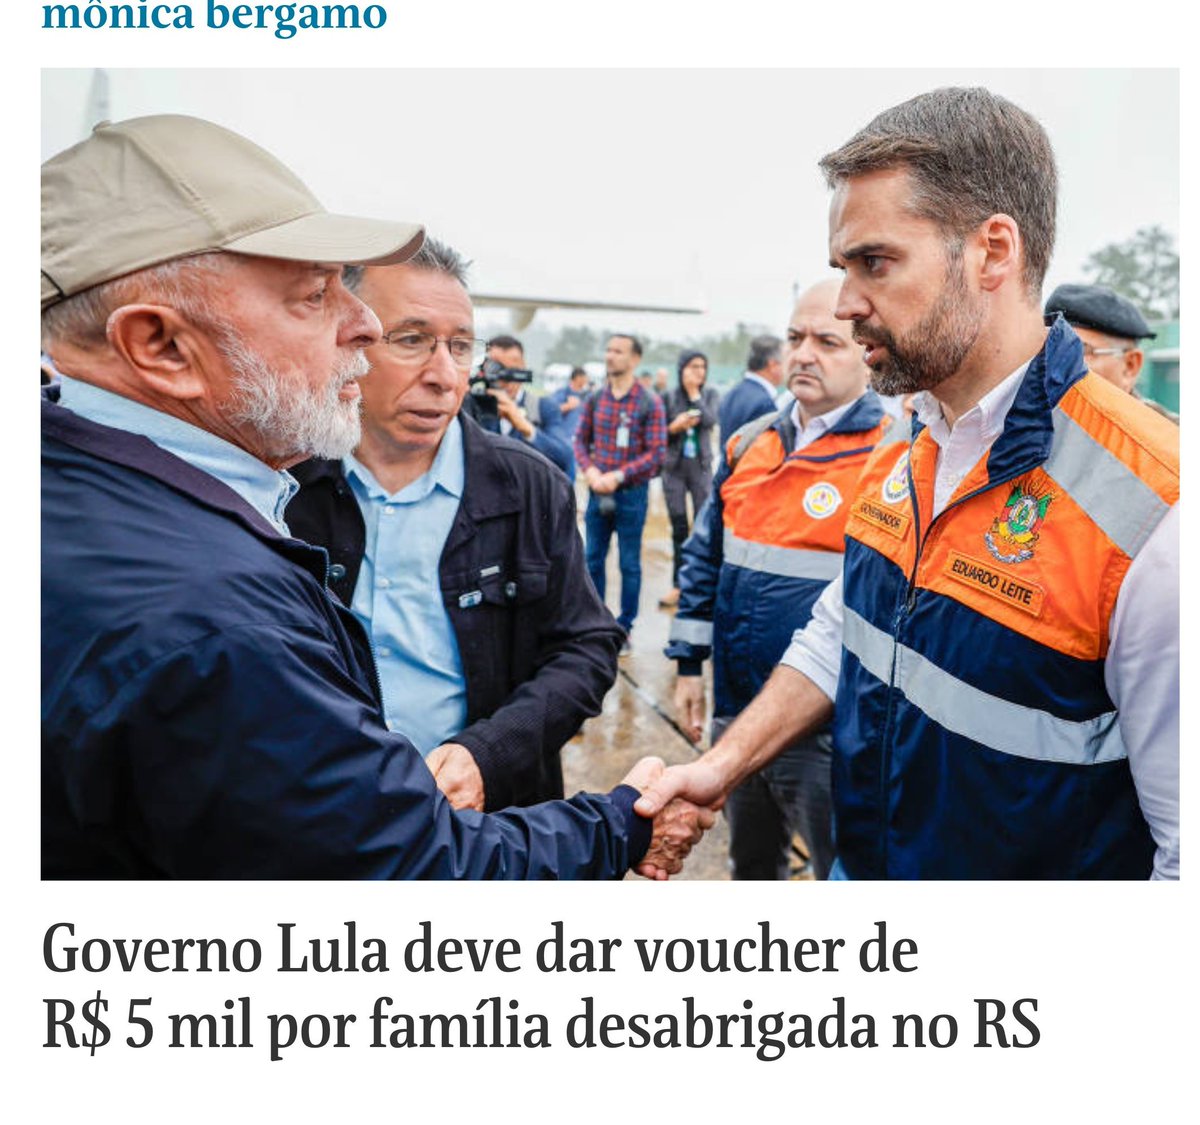 Governo Lula deve dar voucher de R$ 5 mil por família desabrigada no RS. A ideia é que 100 mil famílias sejam beneficiadas.

O voucher, no entanto, não terá restrições e as pessoas vão poder gastar no que acharem necessário.

GOVERNO LULA SALVA